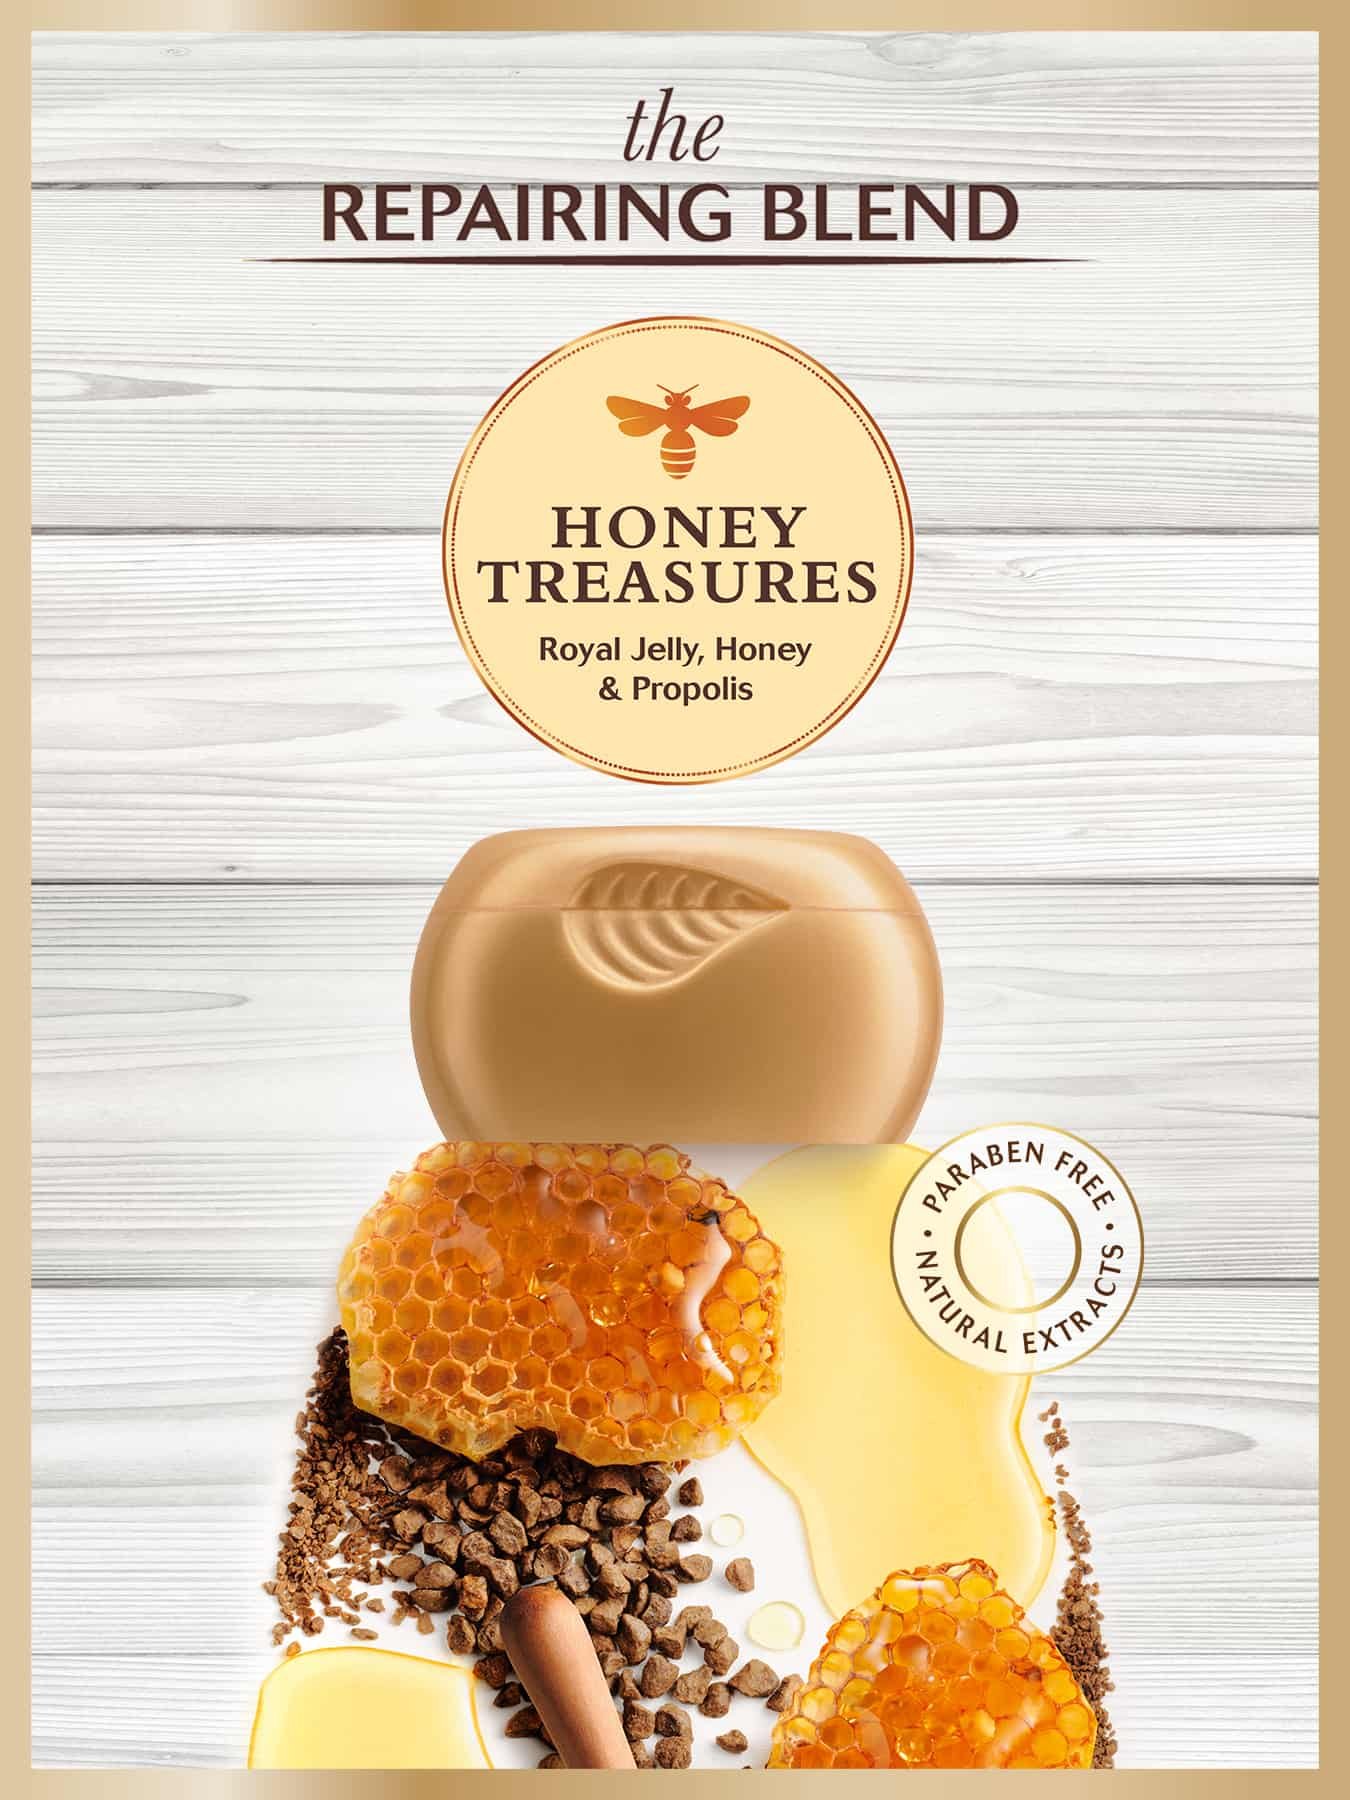 Garnier Whole Blends Honey Treasures Ingredients2